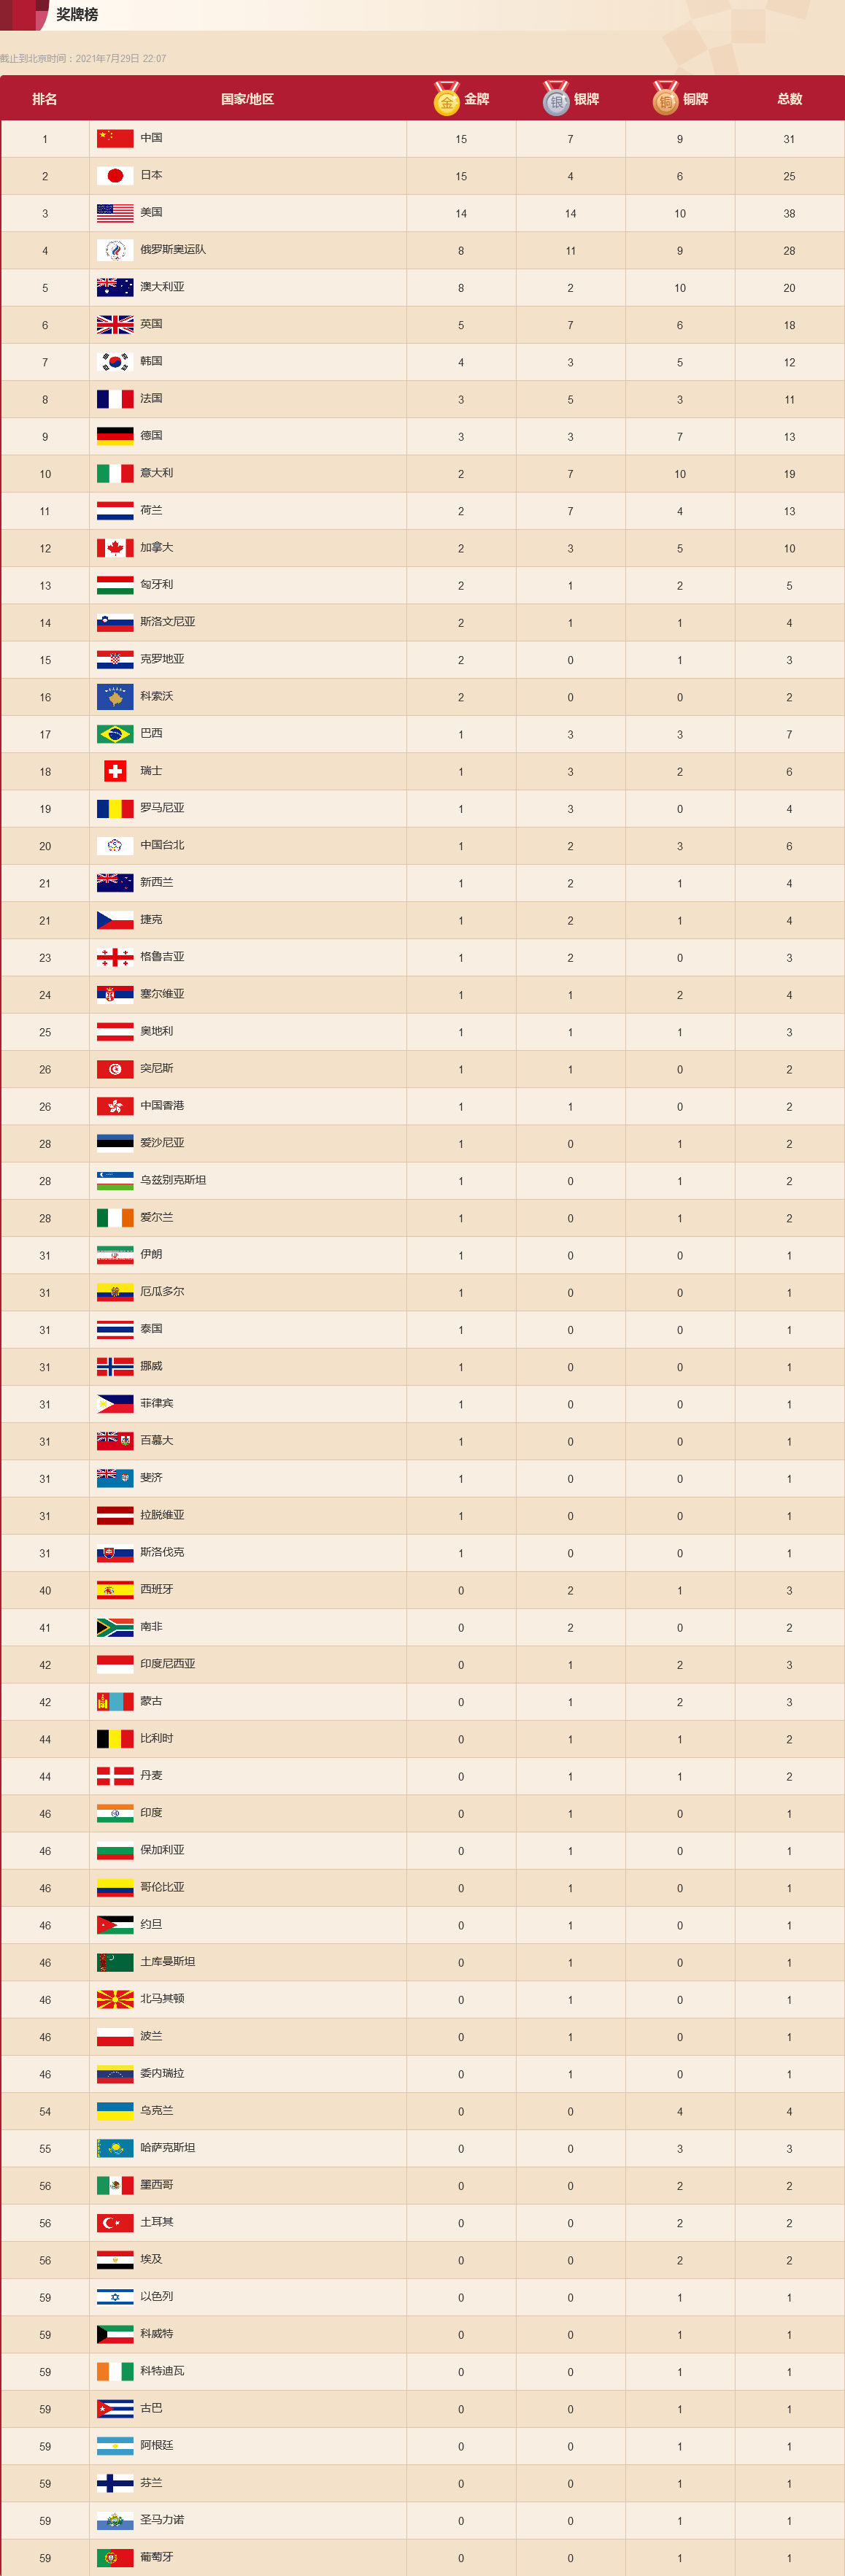 奥运会2016奖牌榜图片